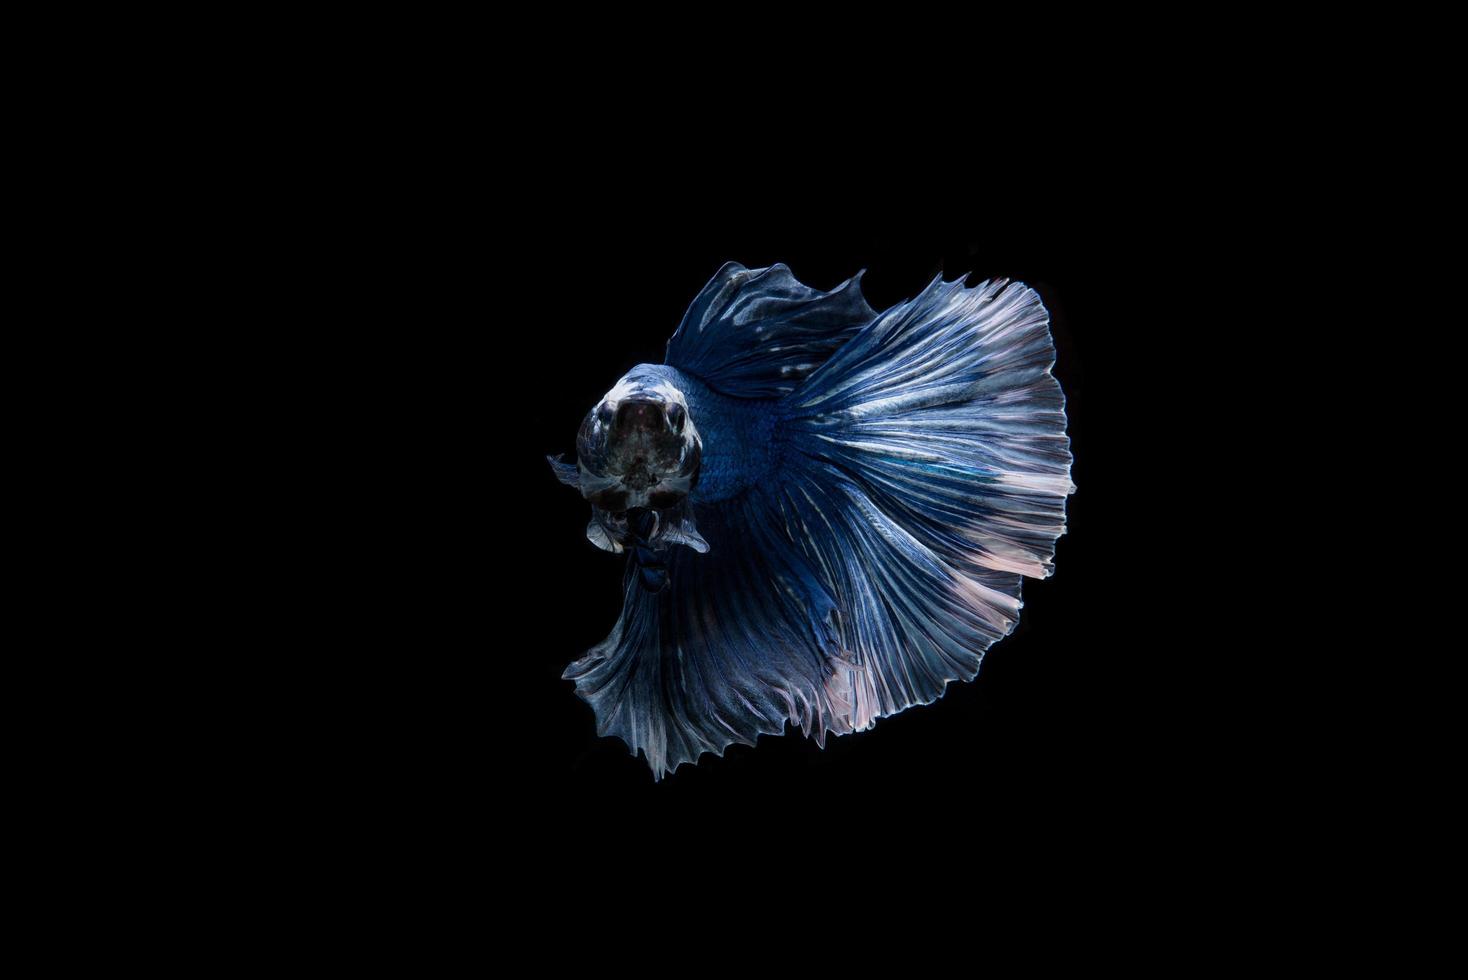 schöne siamesische Betta Fisch foto